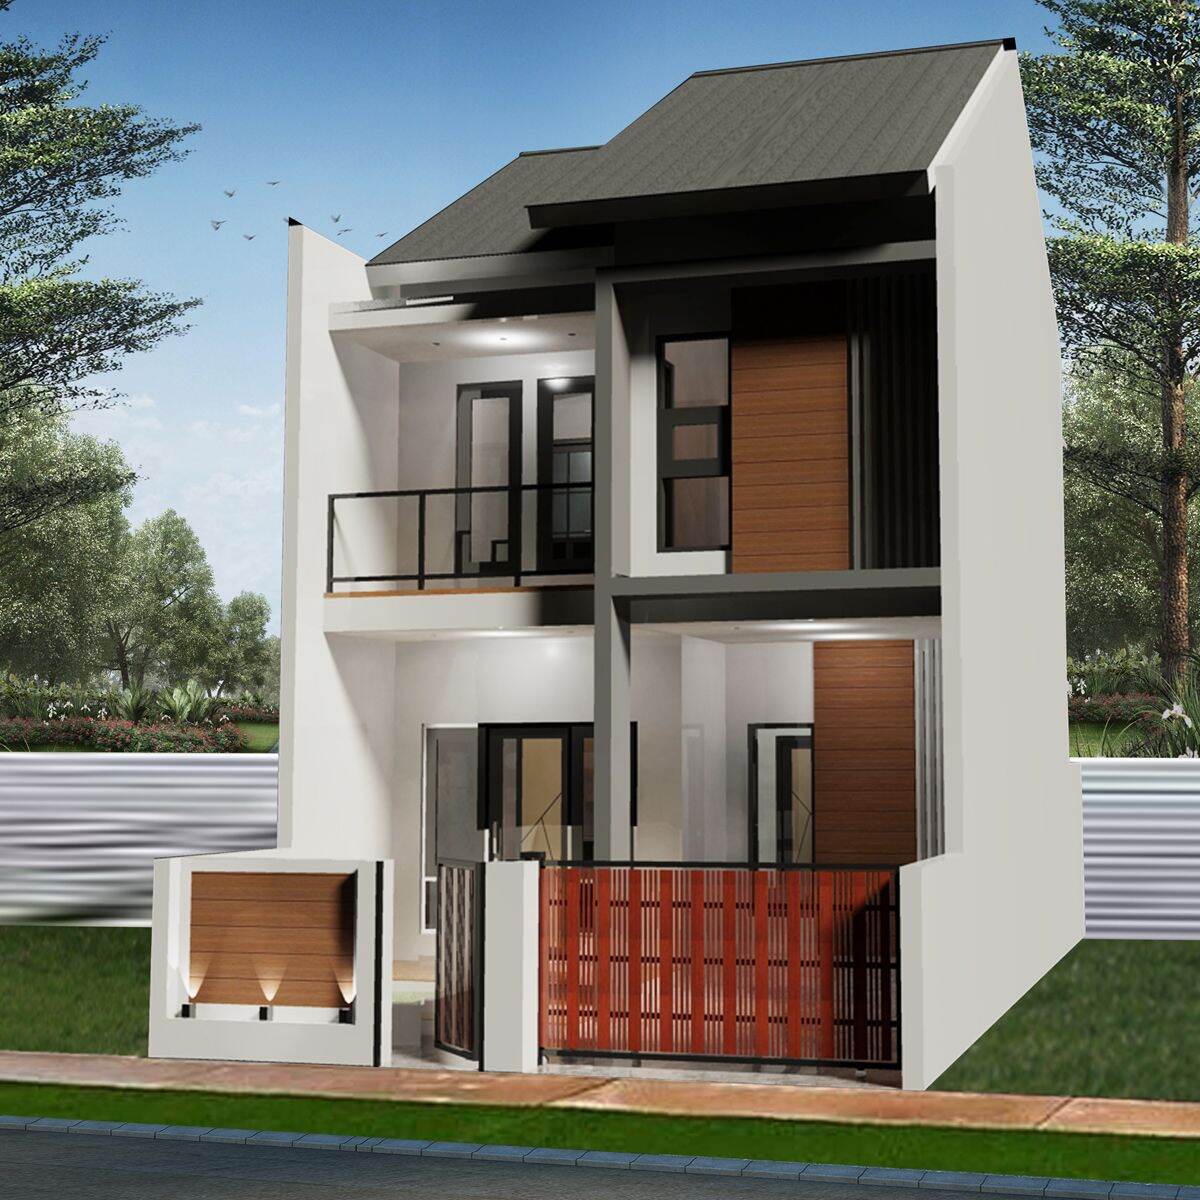 Harga Rumah Minimalis Lantai 2 Terbaru Januari 2022 BigGo Indonesia